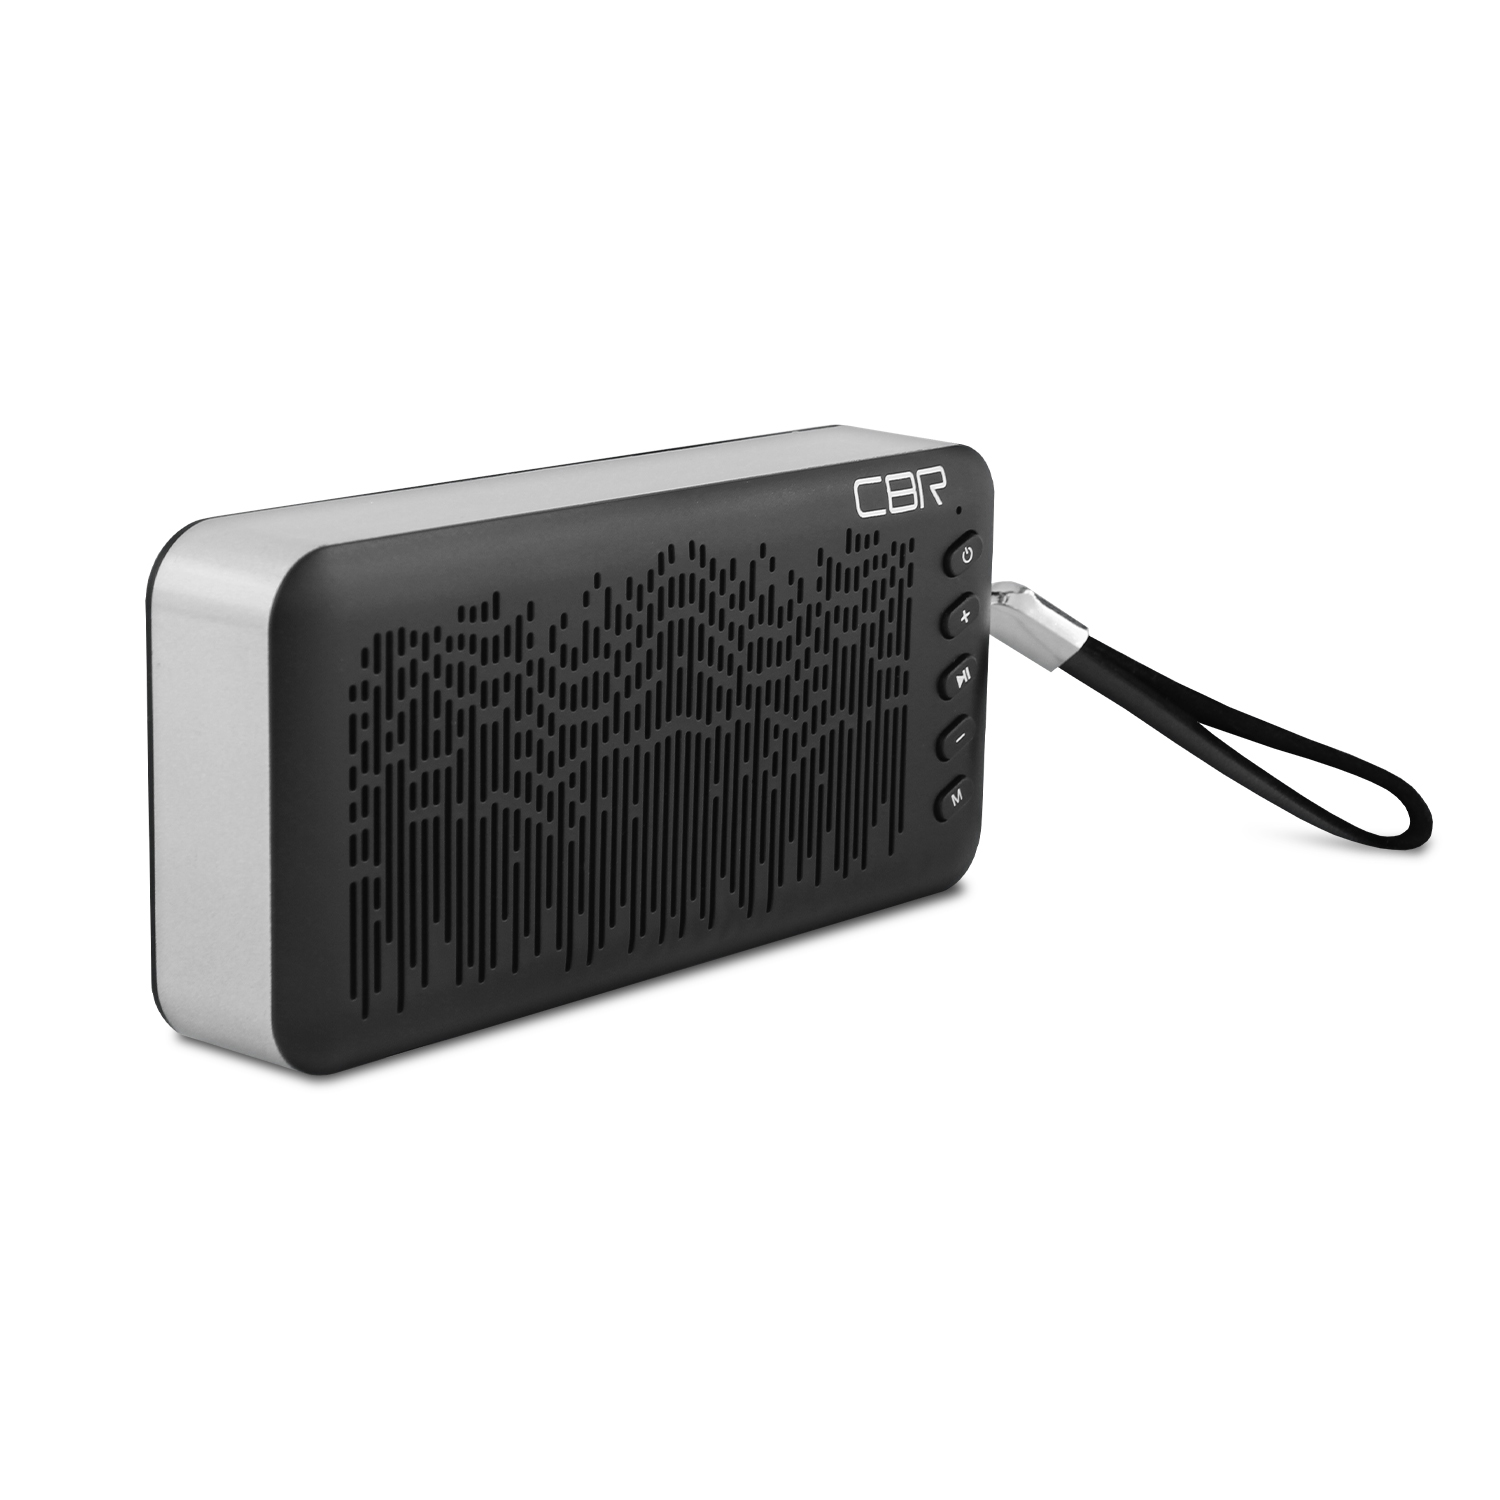 Портативная аудиосистема CBR CMS 144Bt, 6 Вт, Bluetooth 3.0, воспроизведение с карт памяти